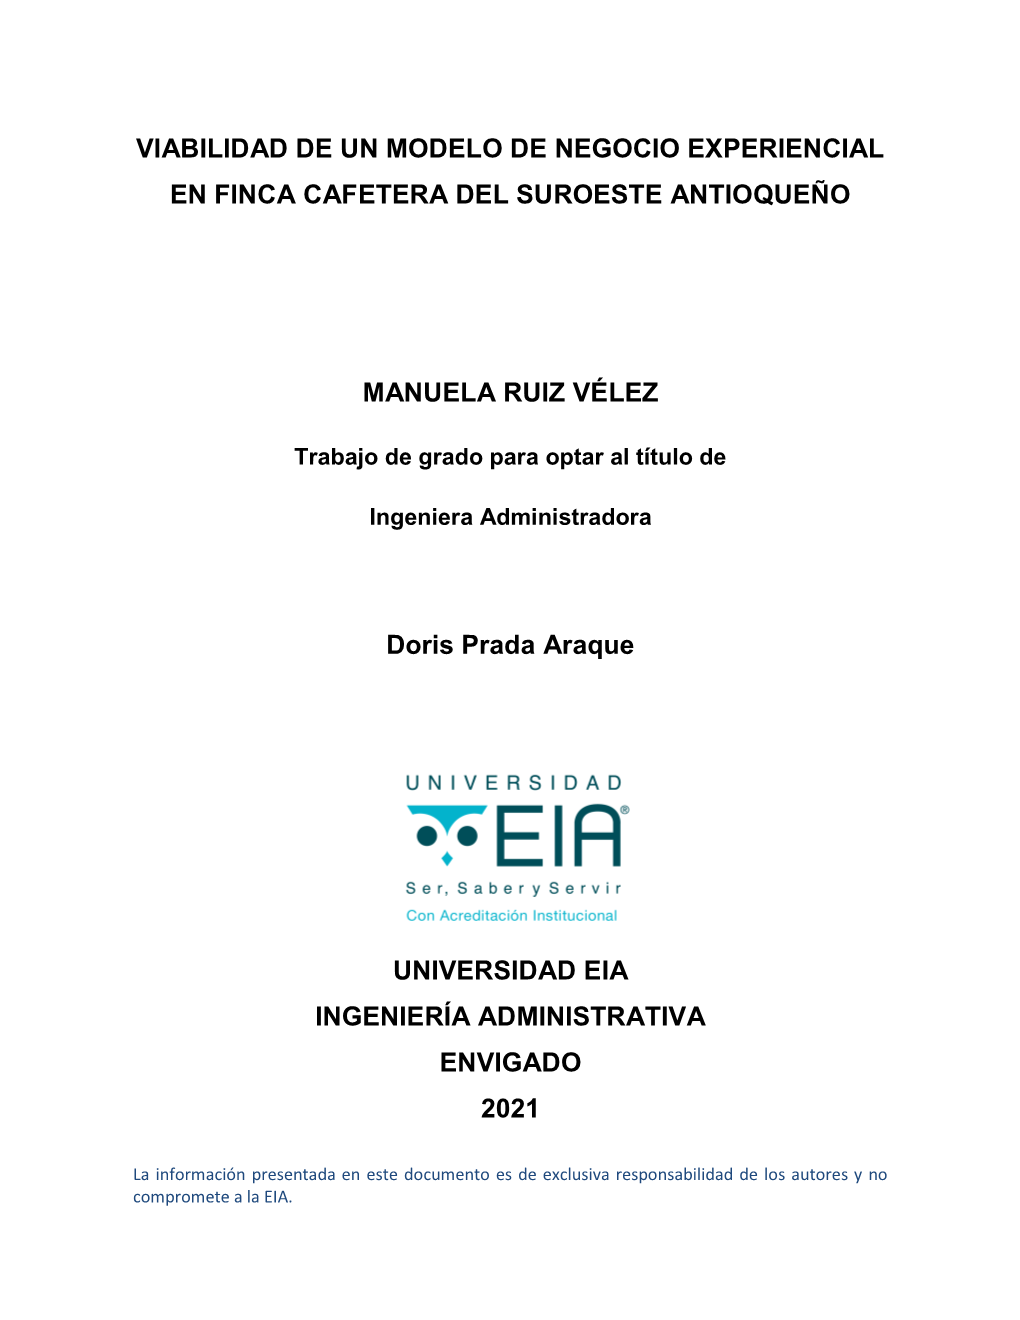 VIABILIDAD DE UN MODELO DE NEGOCIO EXPERIENCIAL EN FINCA CAFETERA DEL SUROESTE ANTIOQUEÑO MANUELA RUIZ VÉLEZ Doris Prada Araqu